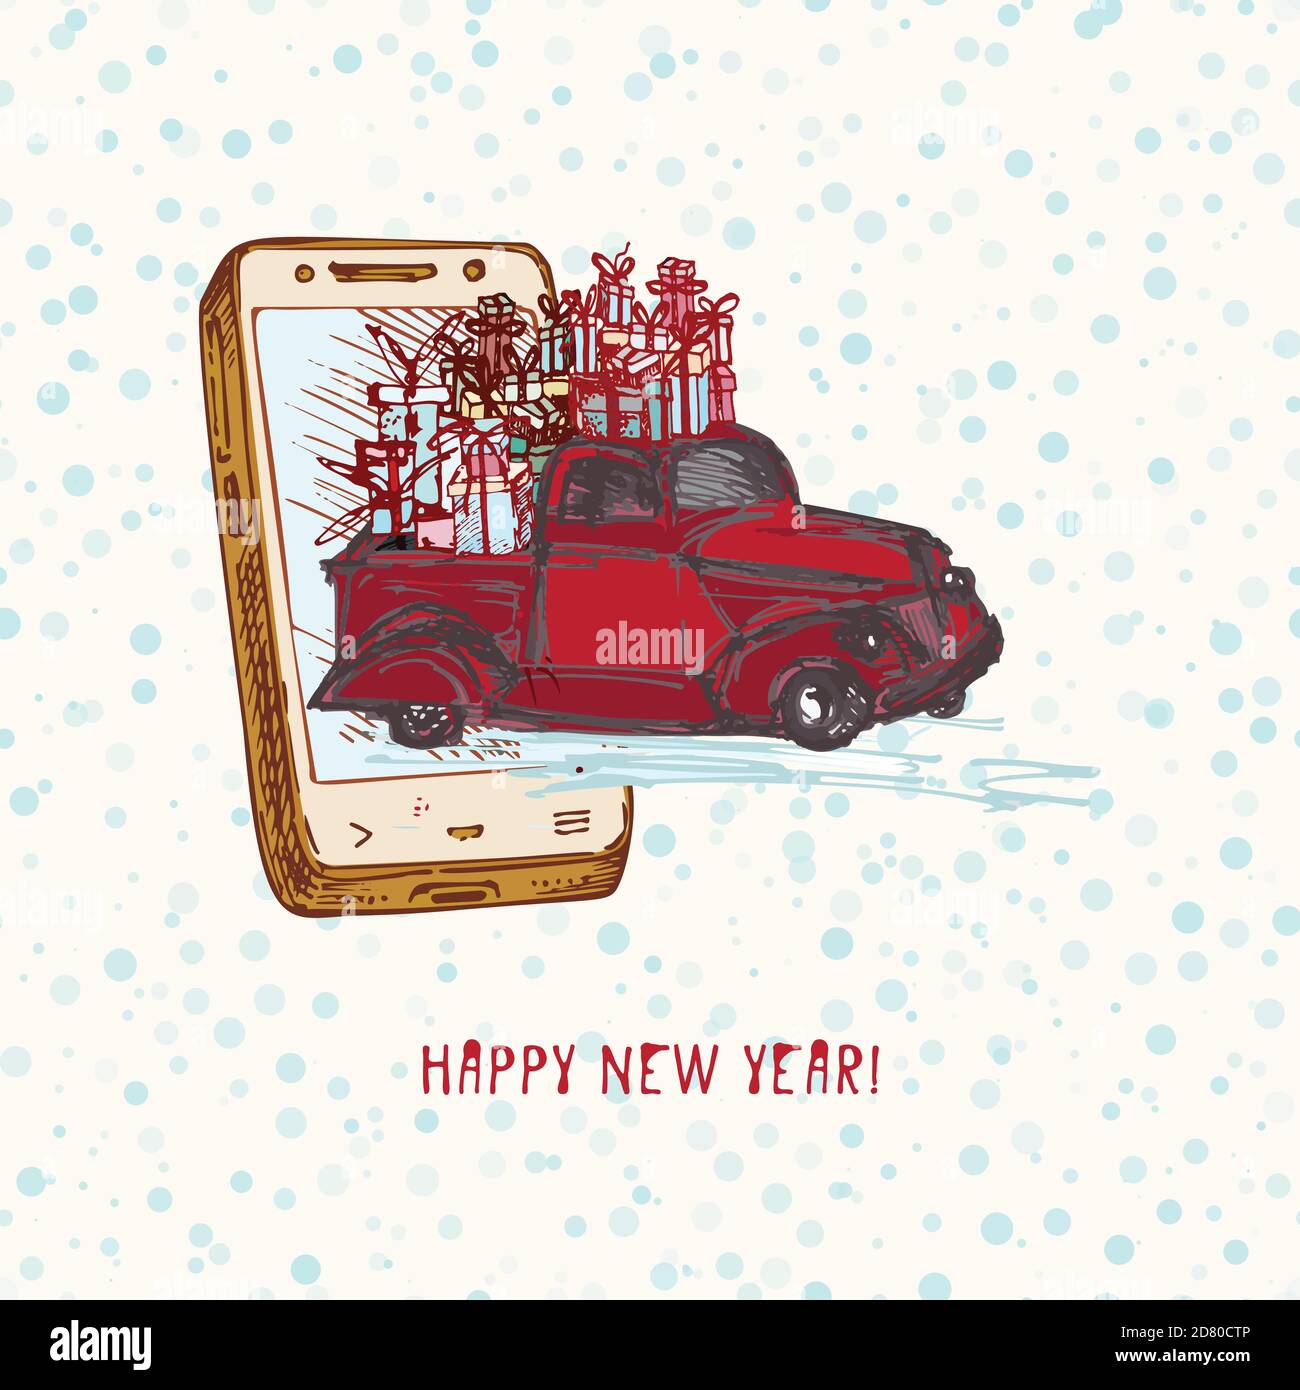 Festliche Weihnachten Neujahrskonzept Feiertagslieferung Handgezeichnetes Smartphone Und Rotes Auto Mit Tannenbaum Geschmuckt Roten Kugeln Und Geschenke Auf Verschneiten Stock Vektorgrafik Alamy